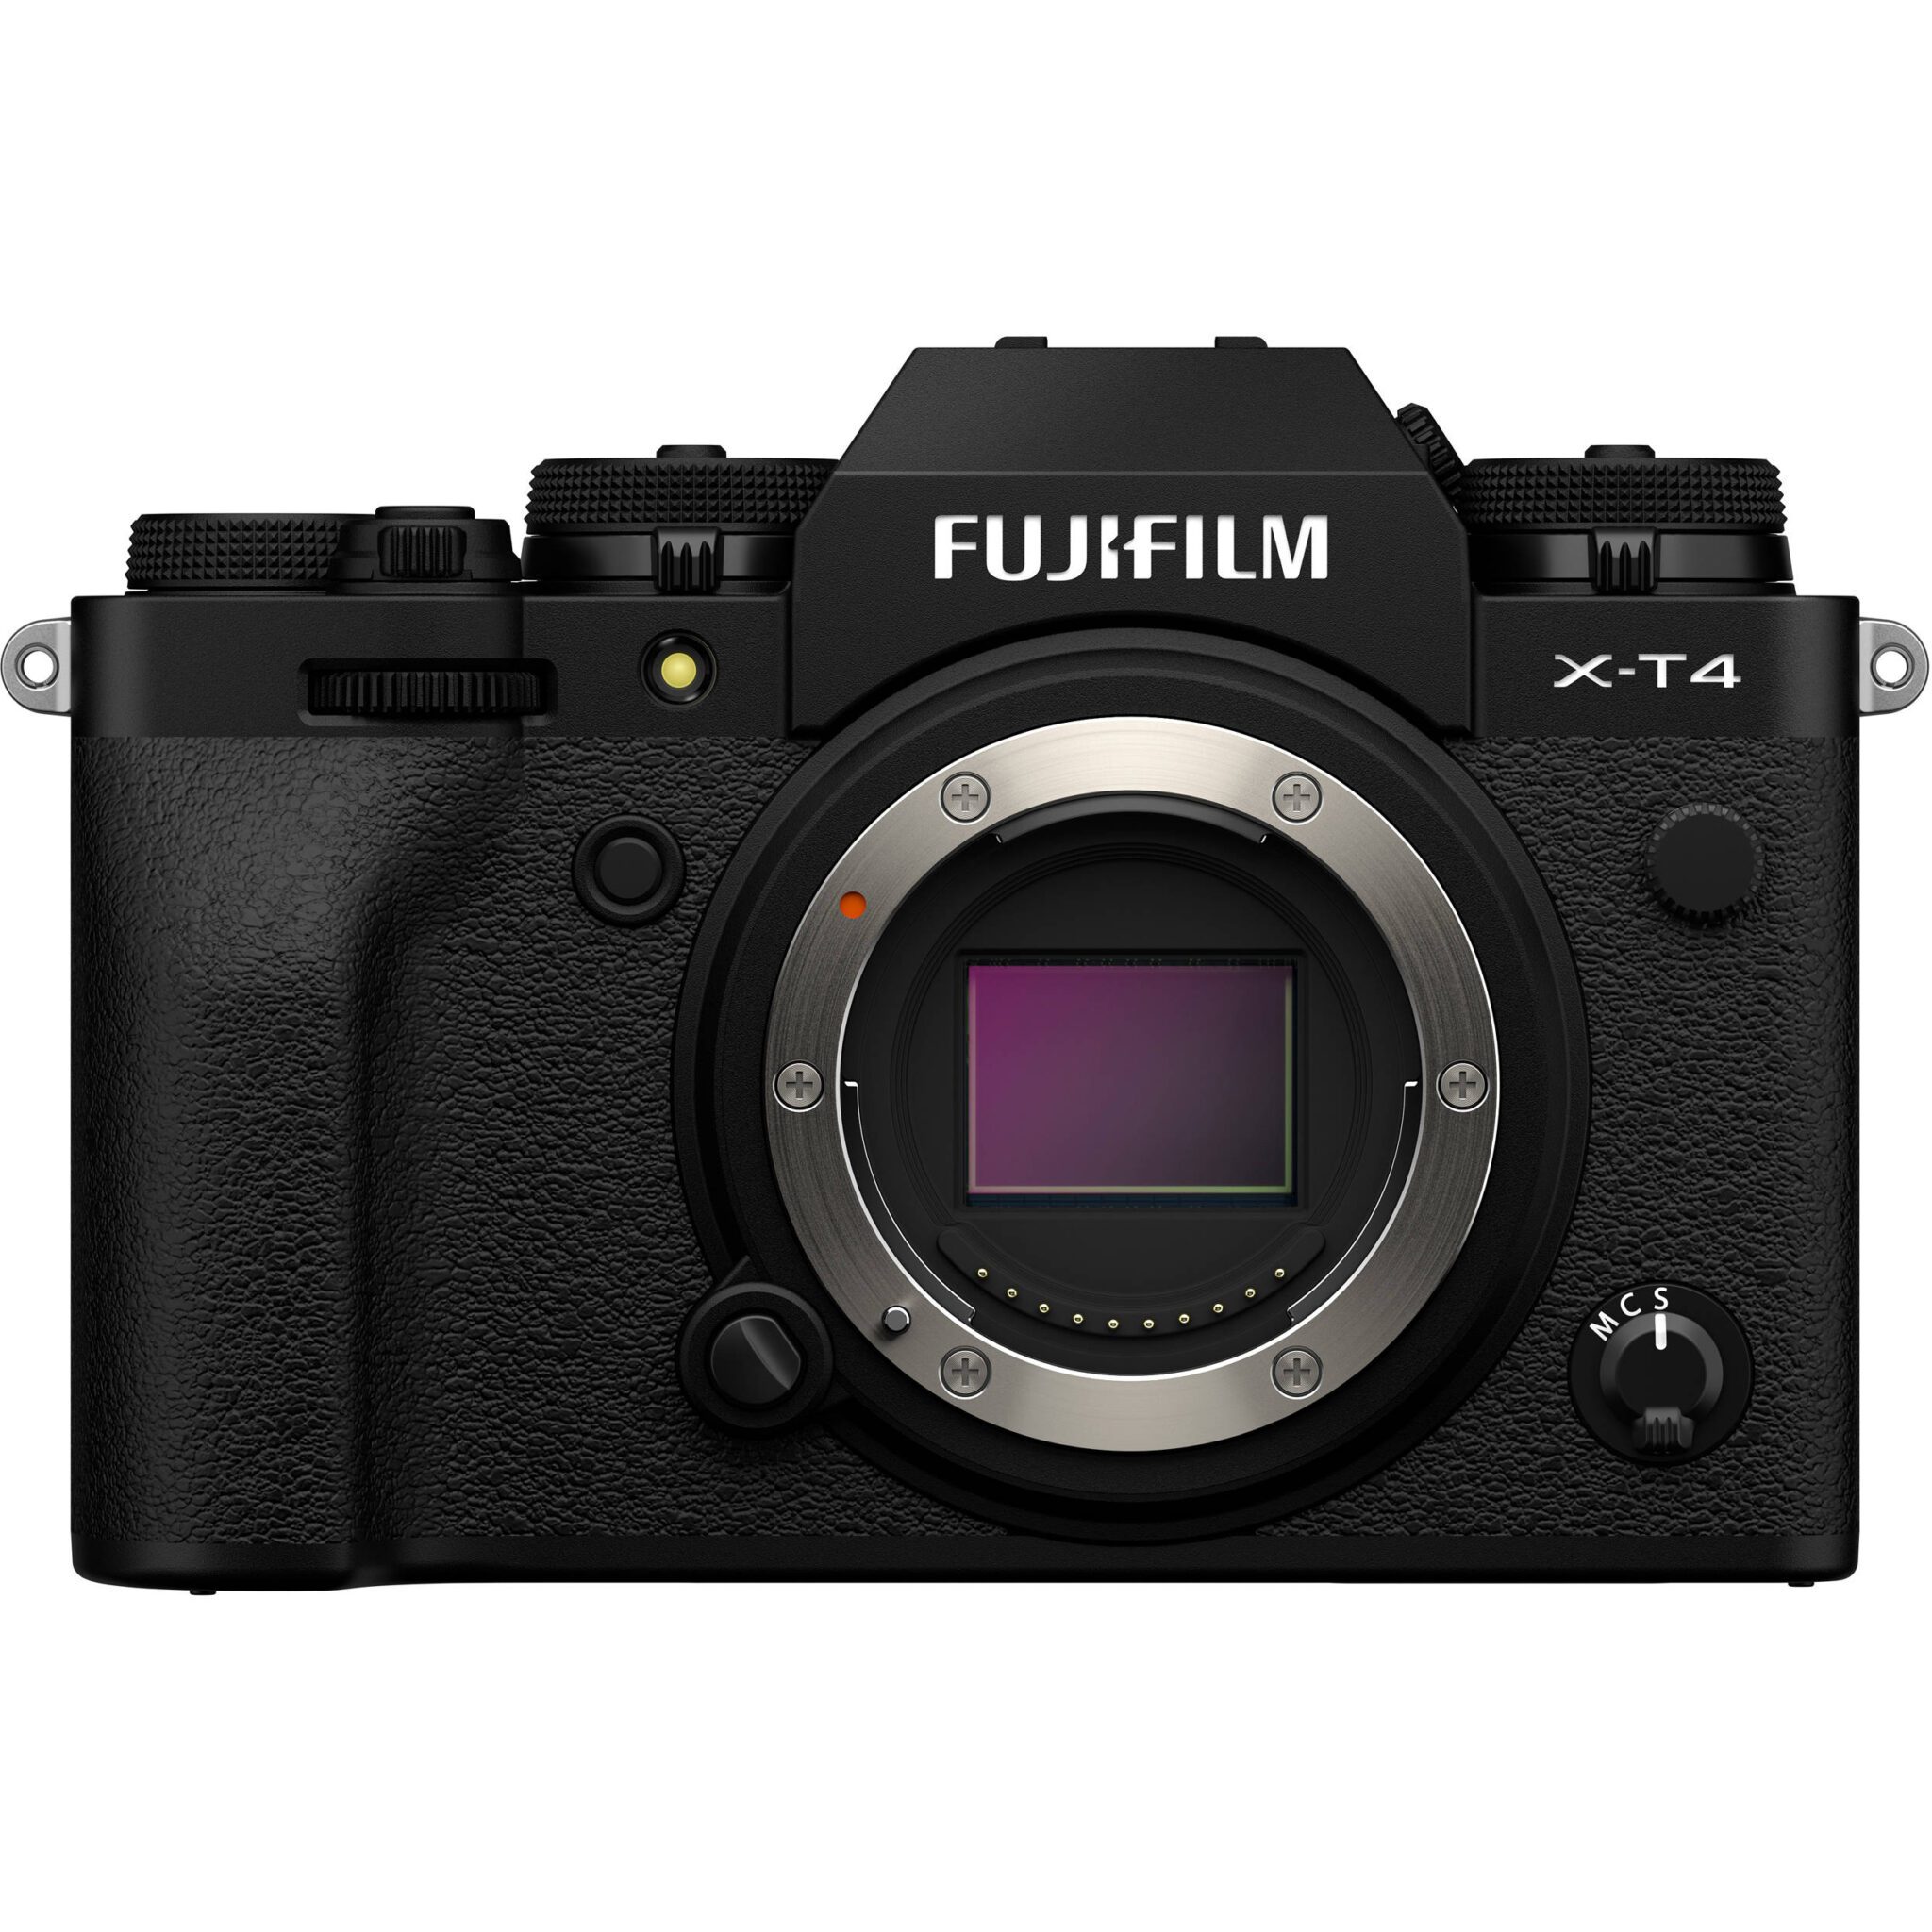 photo of the camera Fuji XT4